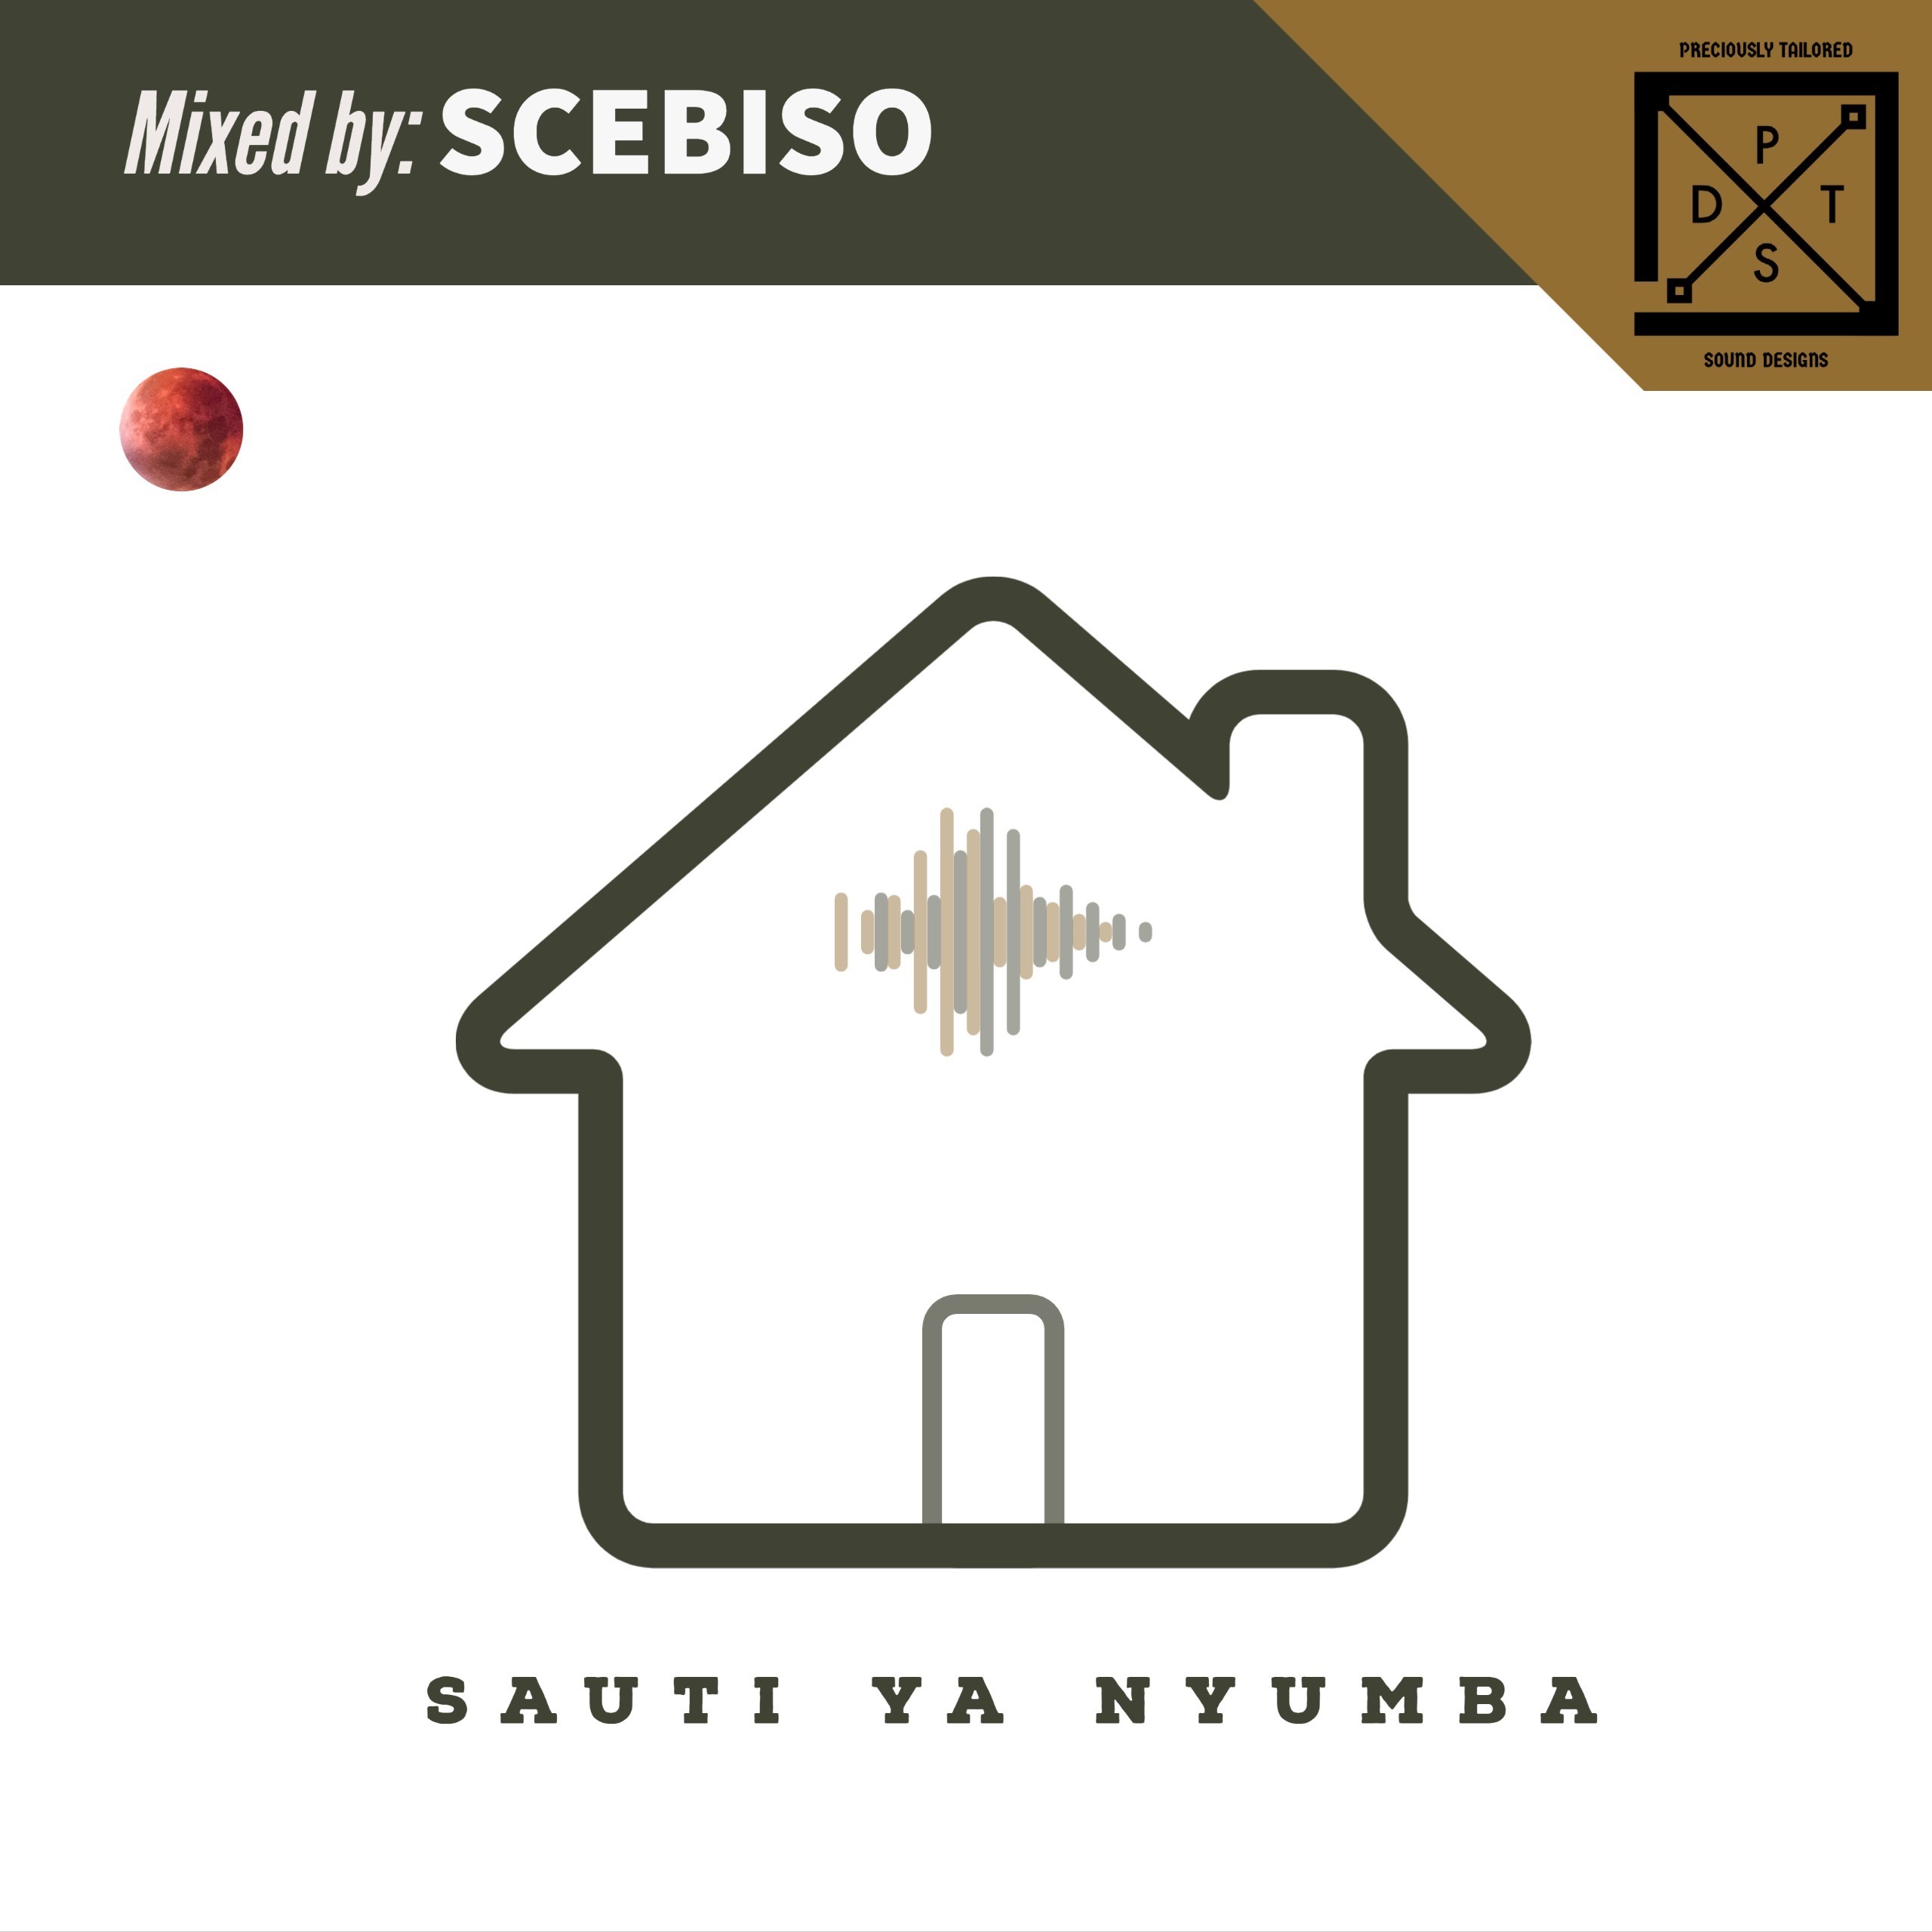 Episode 25: SAUTI YA NYUMBA Vol.25 curated by SCEBISO